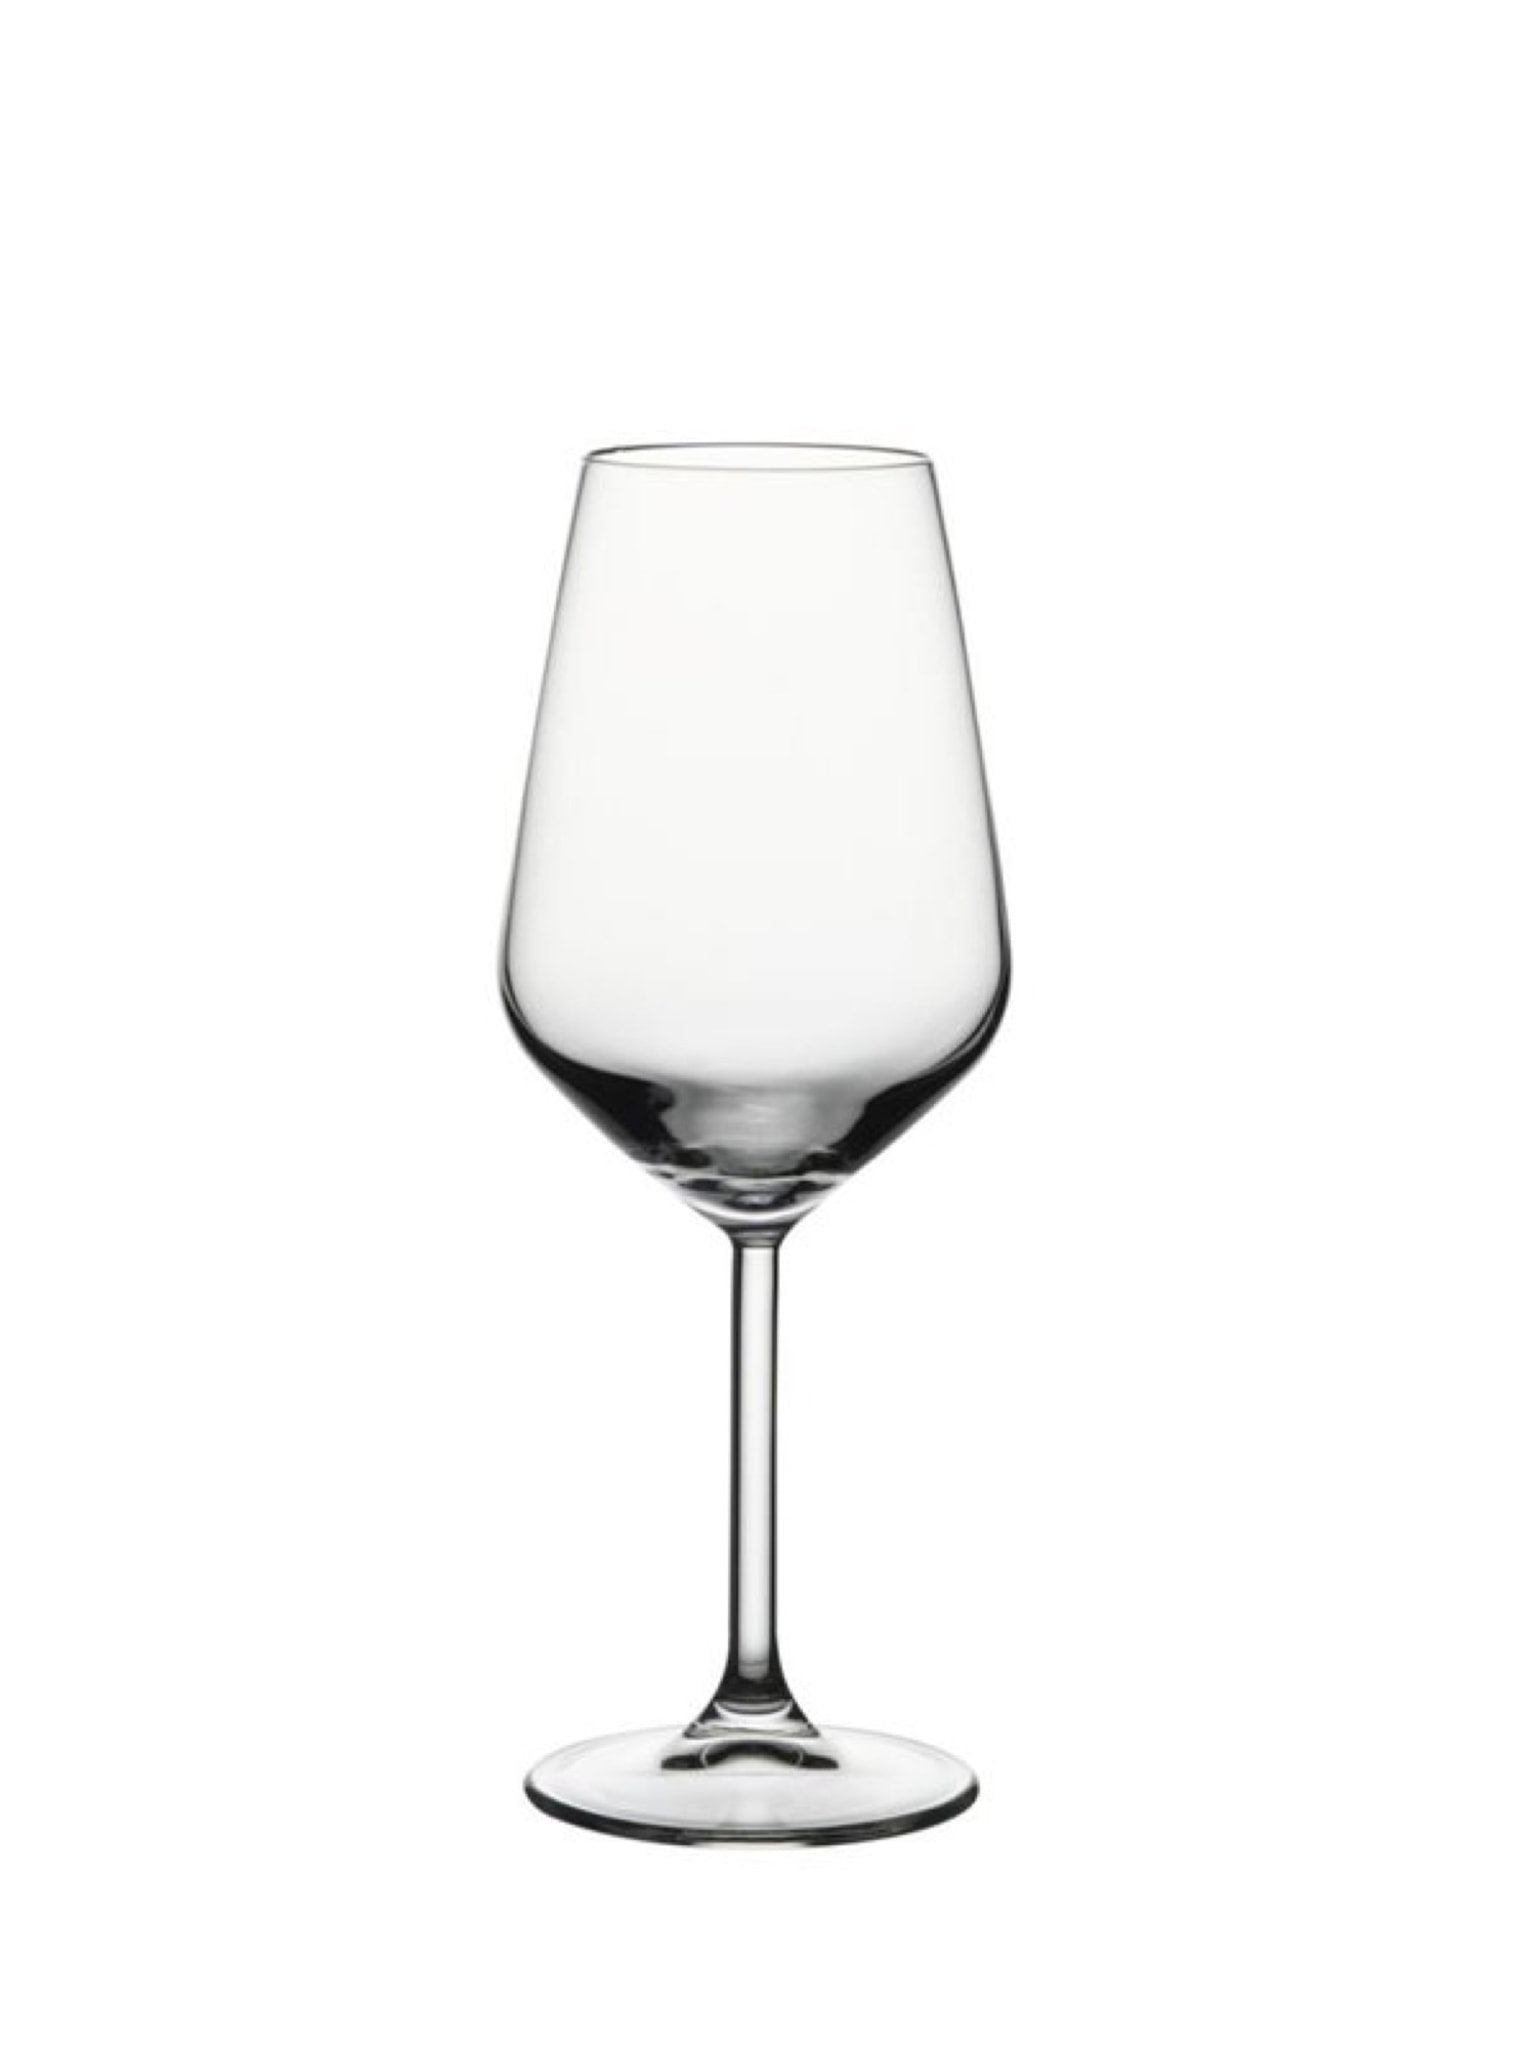 Allegra rødvinsglas - Et elegant og holdbart glas perfekt til servering af rødvin